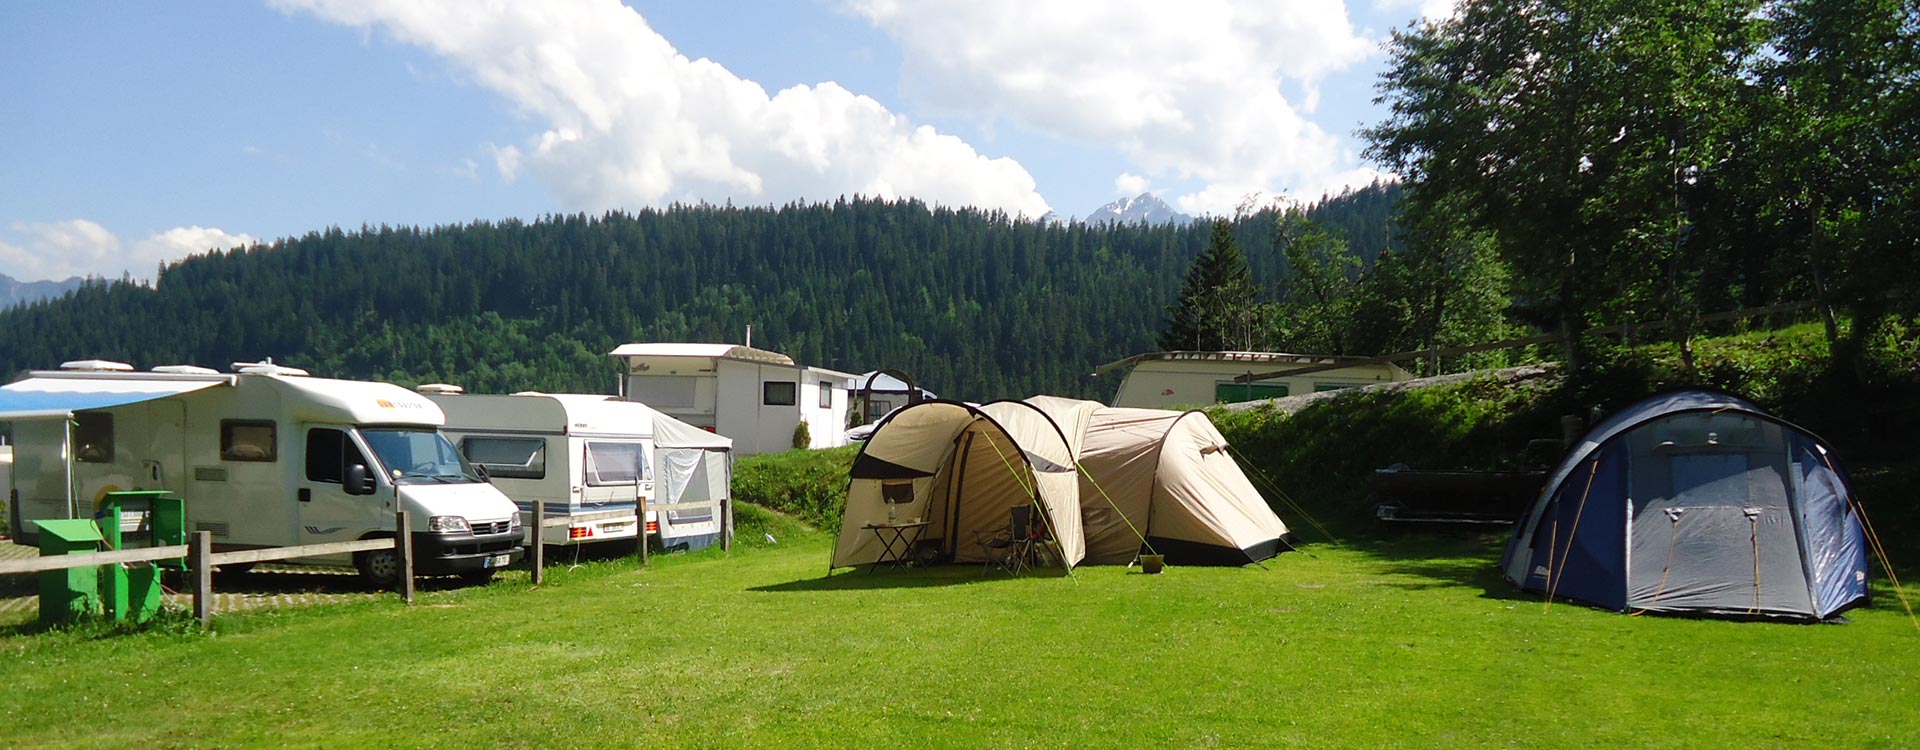 Camping in freier Natur auf unseren Zeltplätzen.